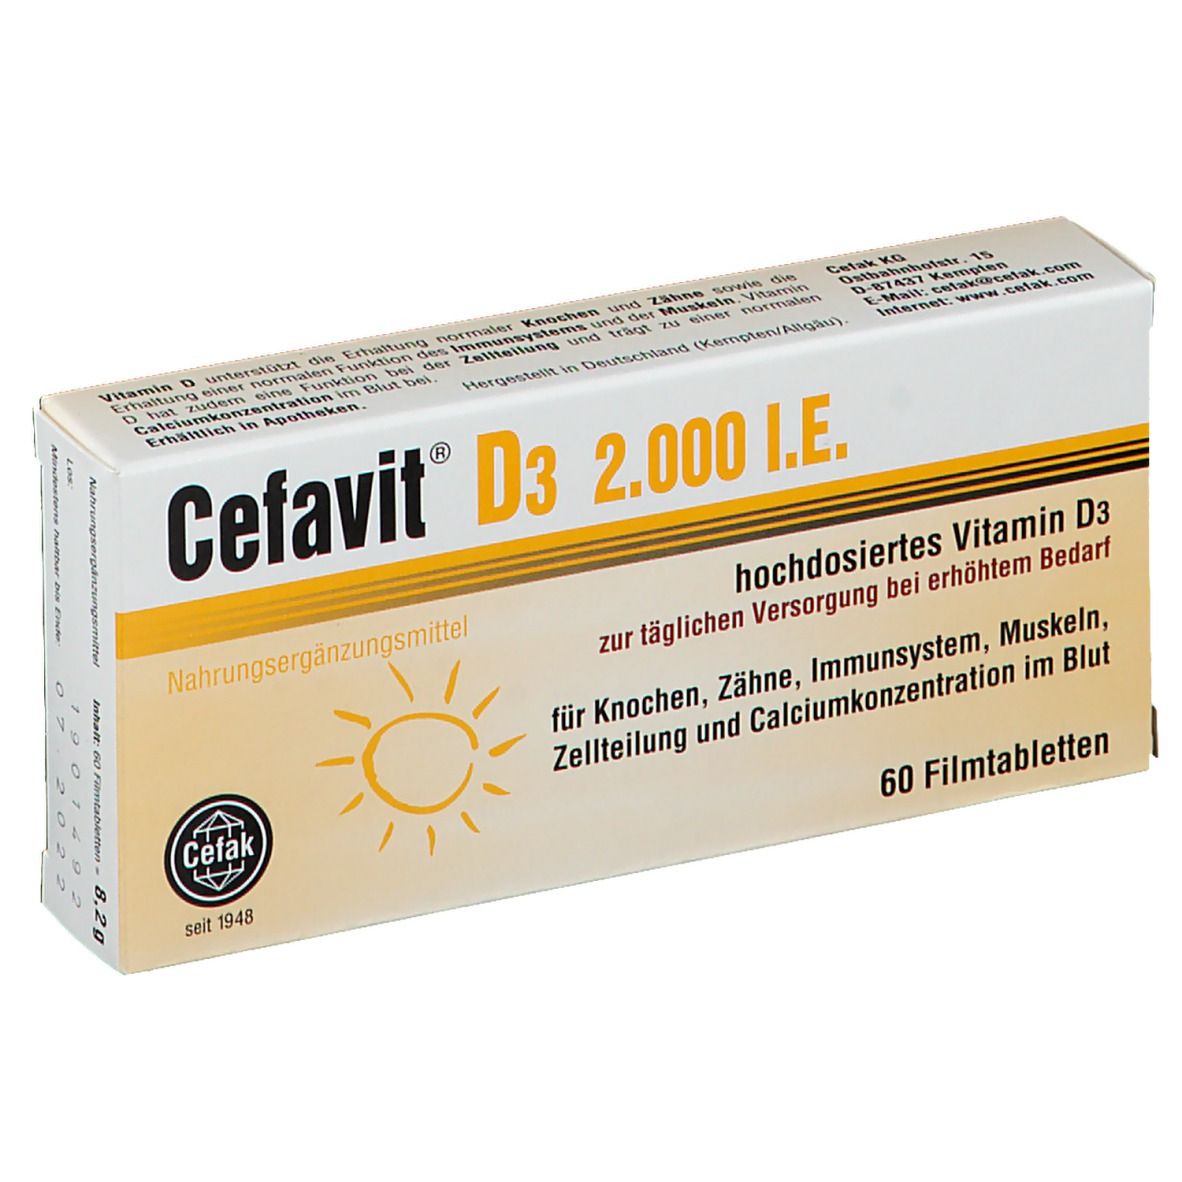 Cefavit® D3 2.000 I.E.